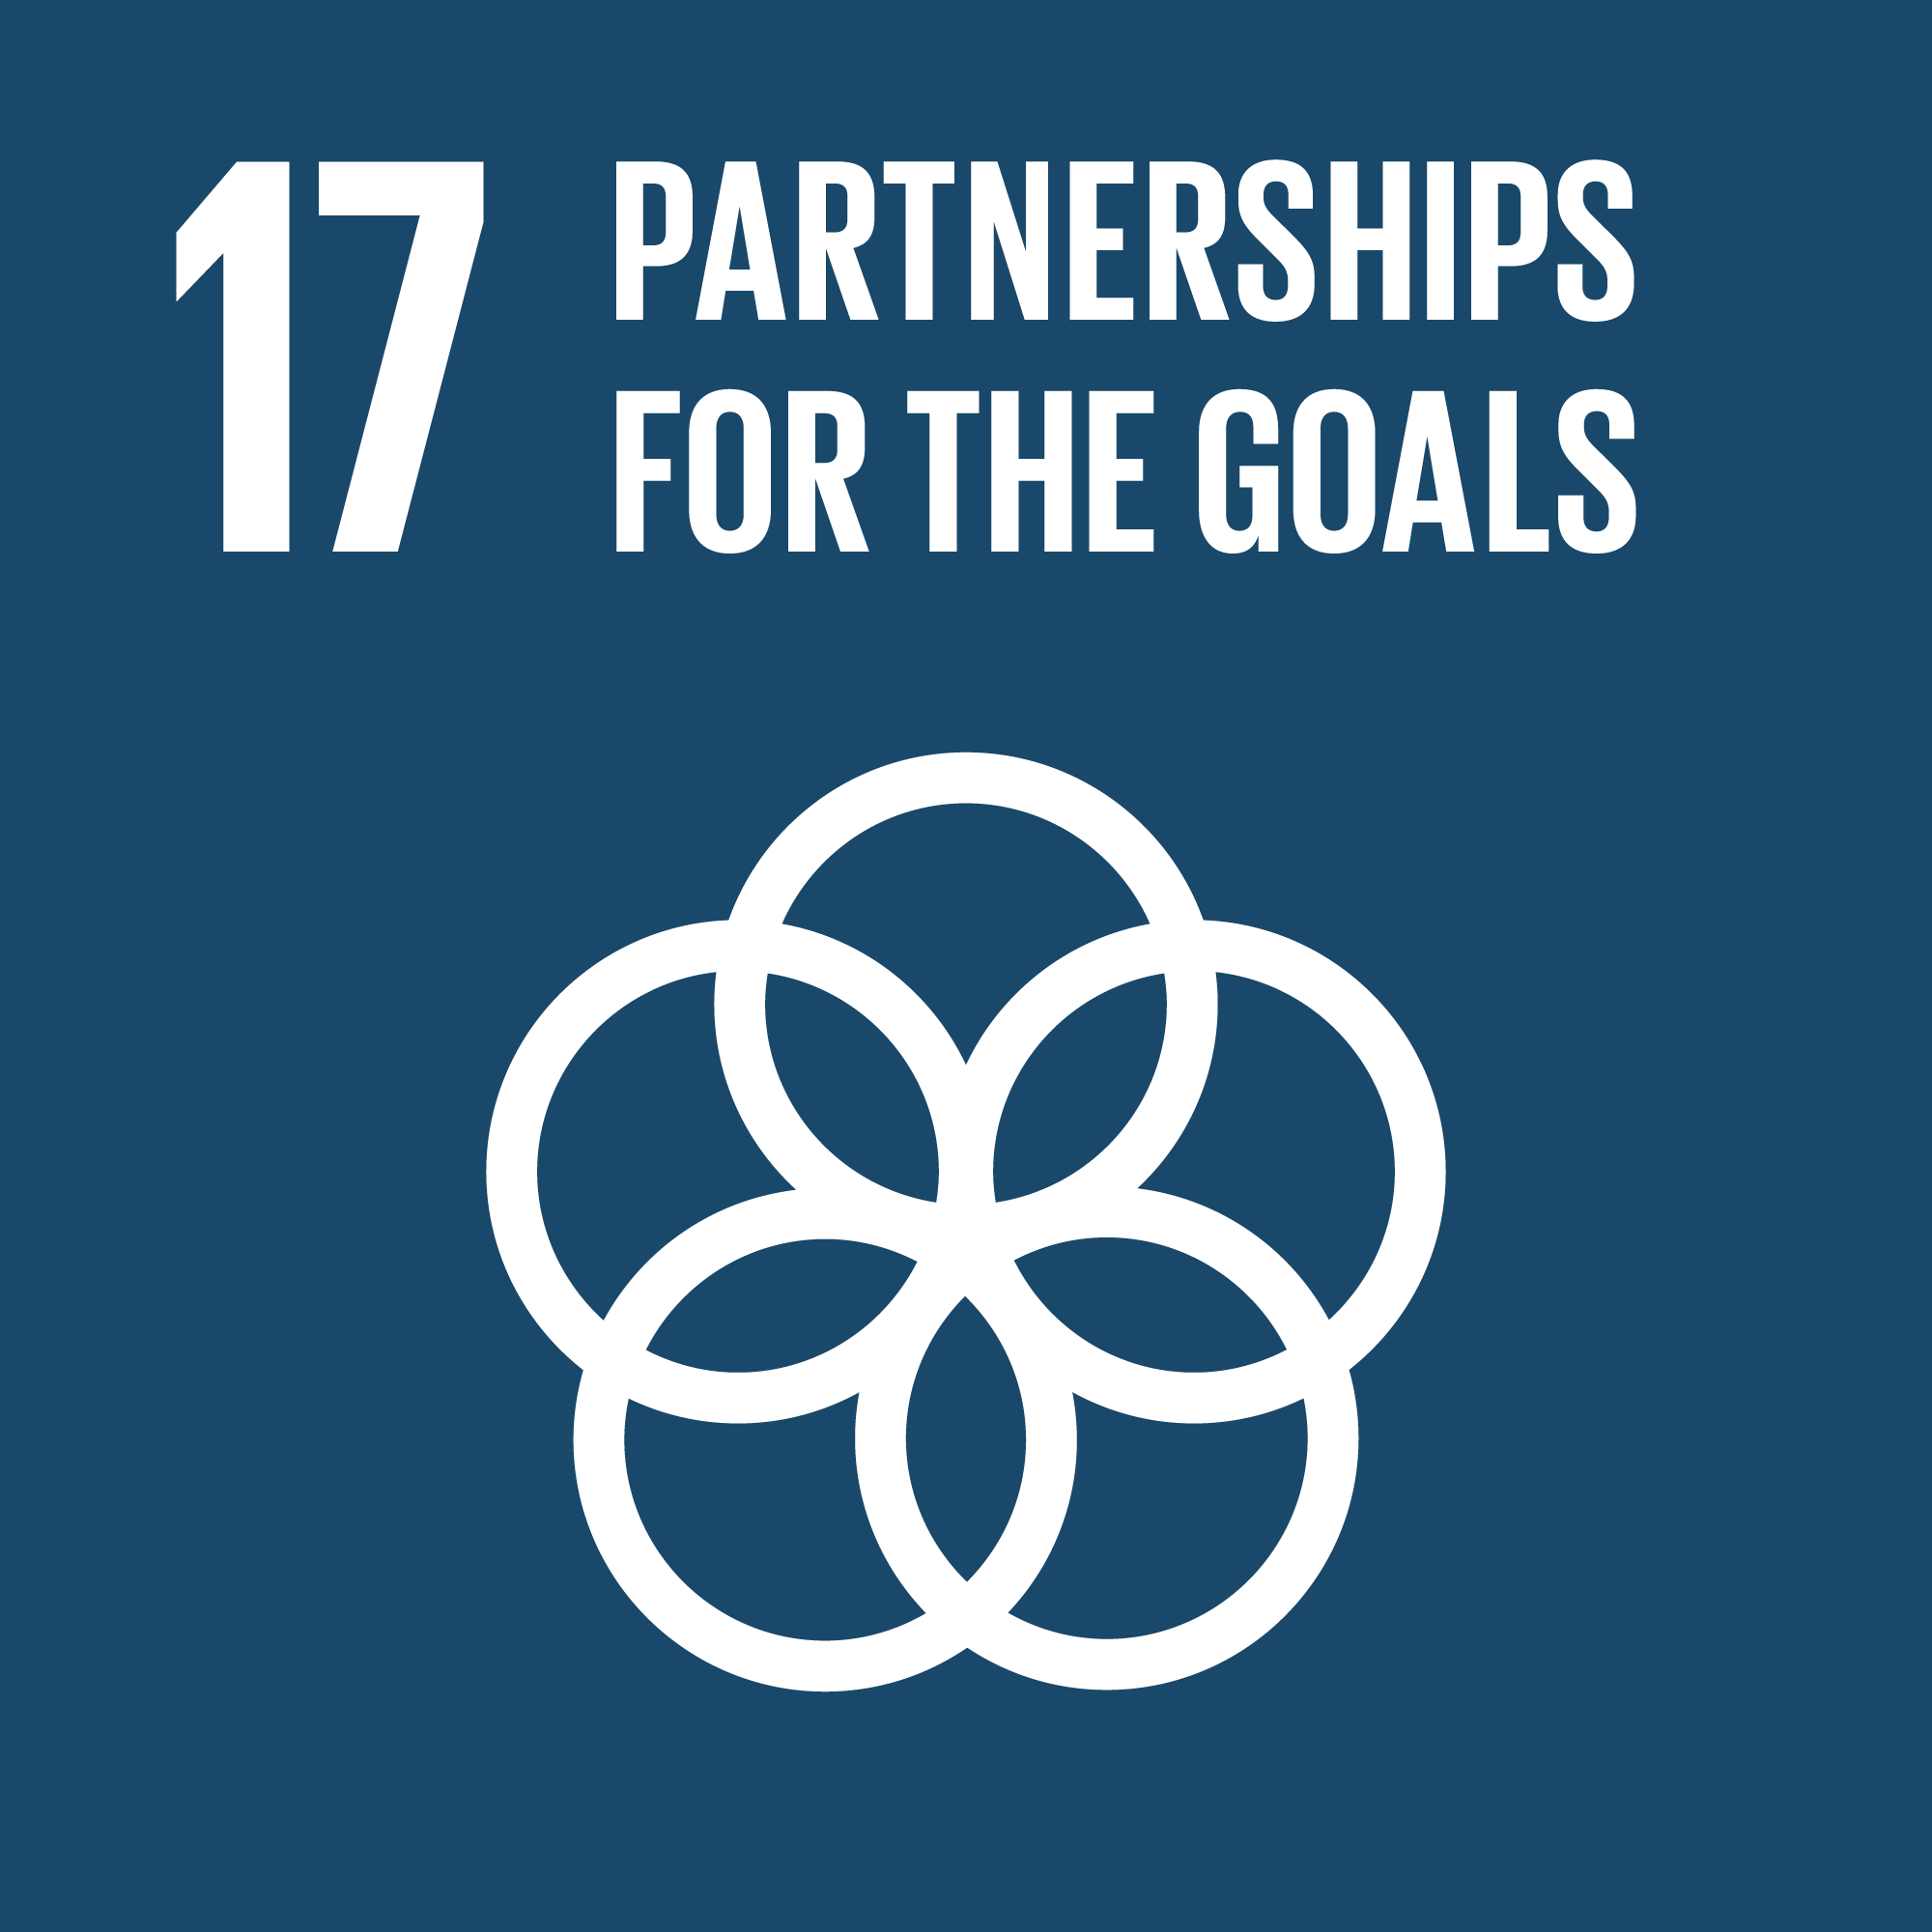 # 17 Partnership per gli obiettivi